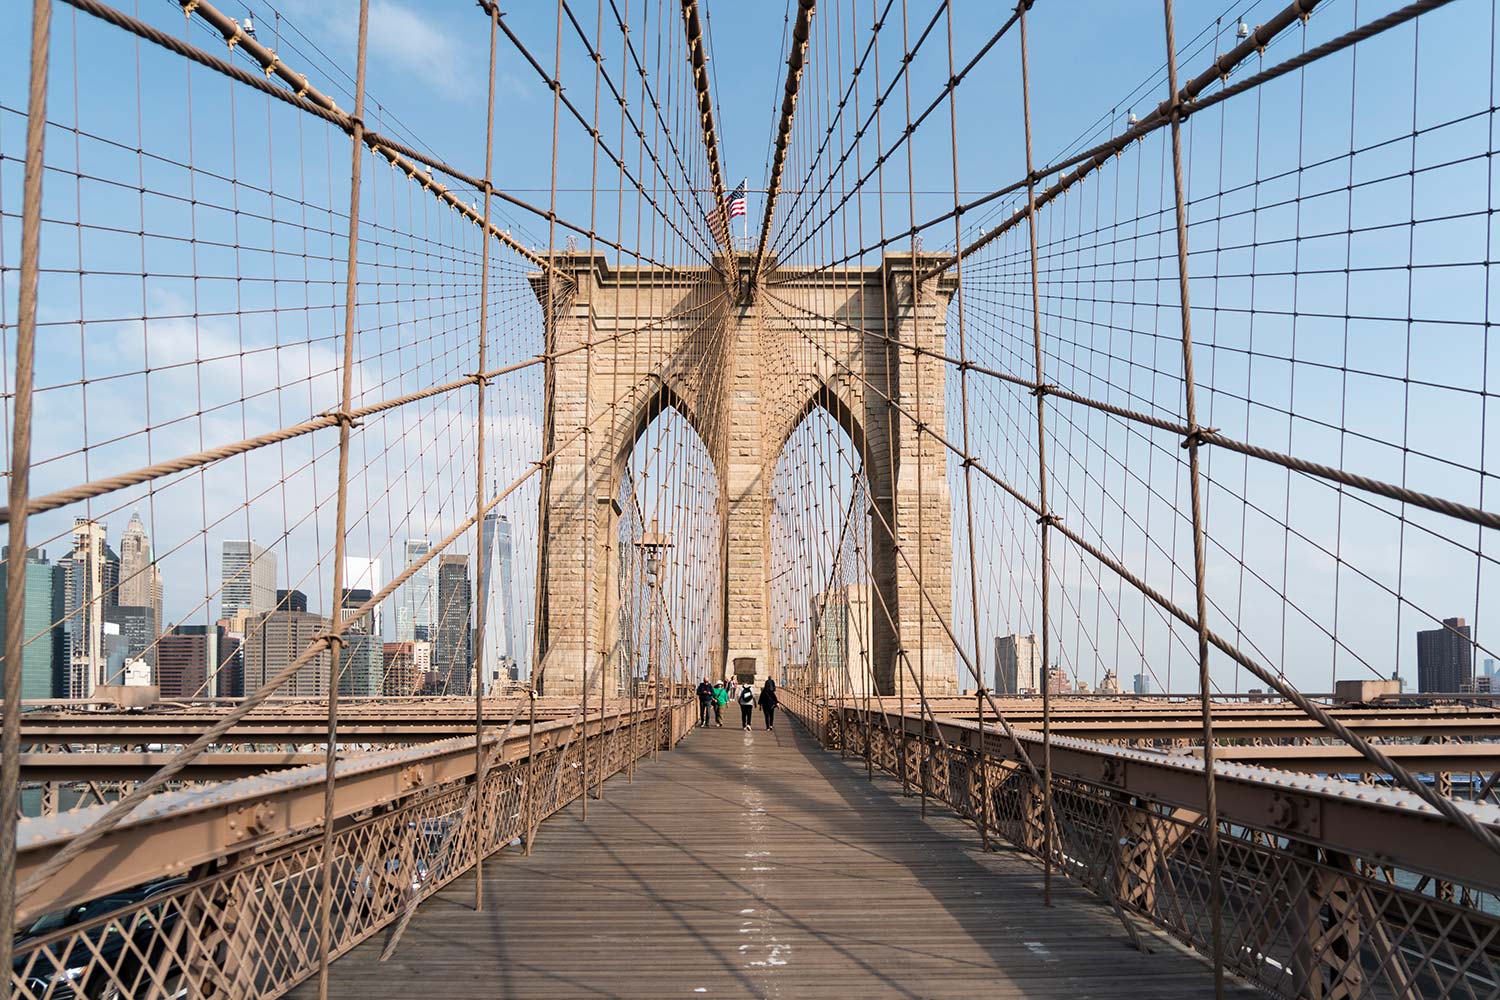 Pont de Brooklyn, Brooklyn, New York, NY, États-Unis / Brooklyn Bridge, Brooklyn, New York, NYC, USA